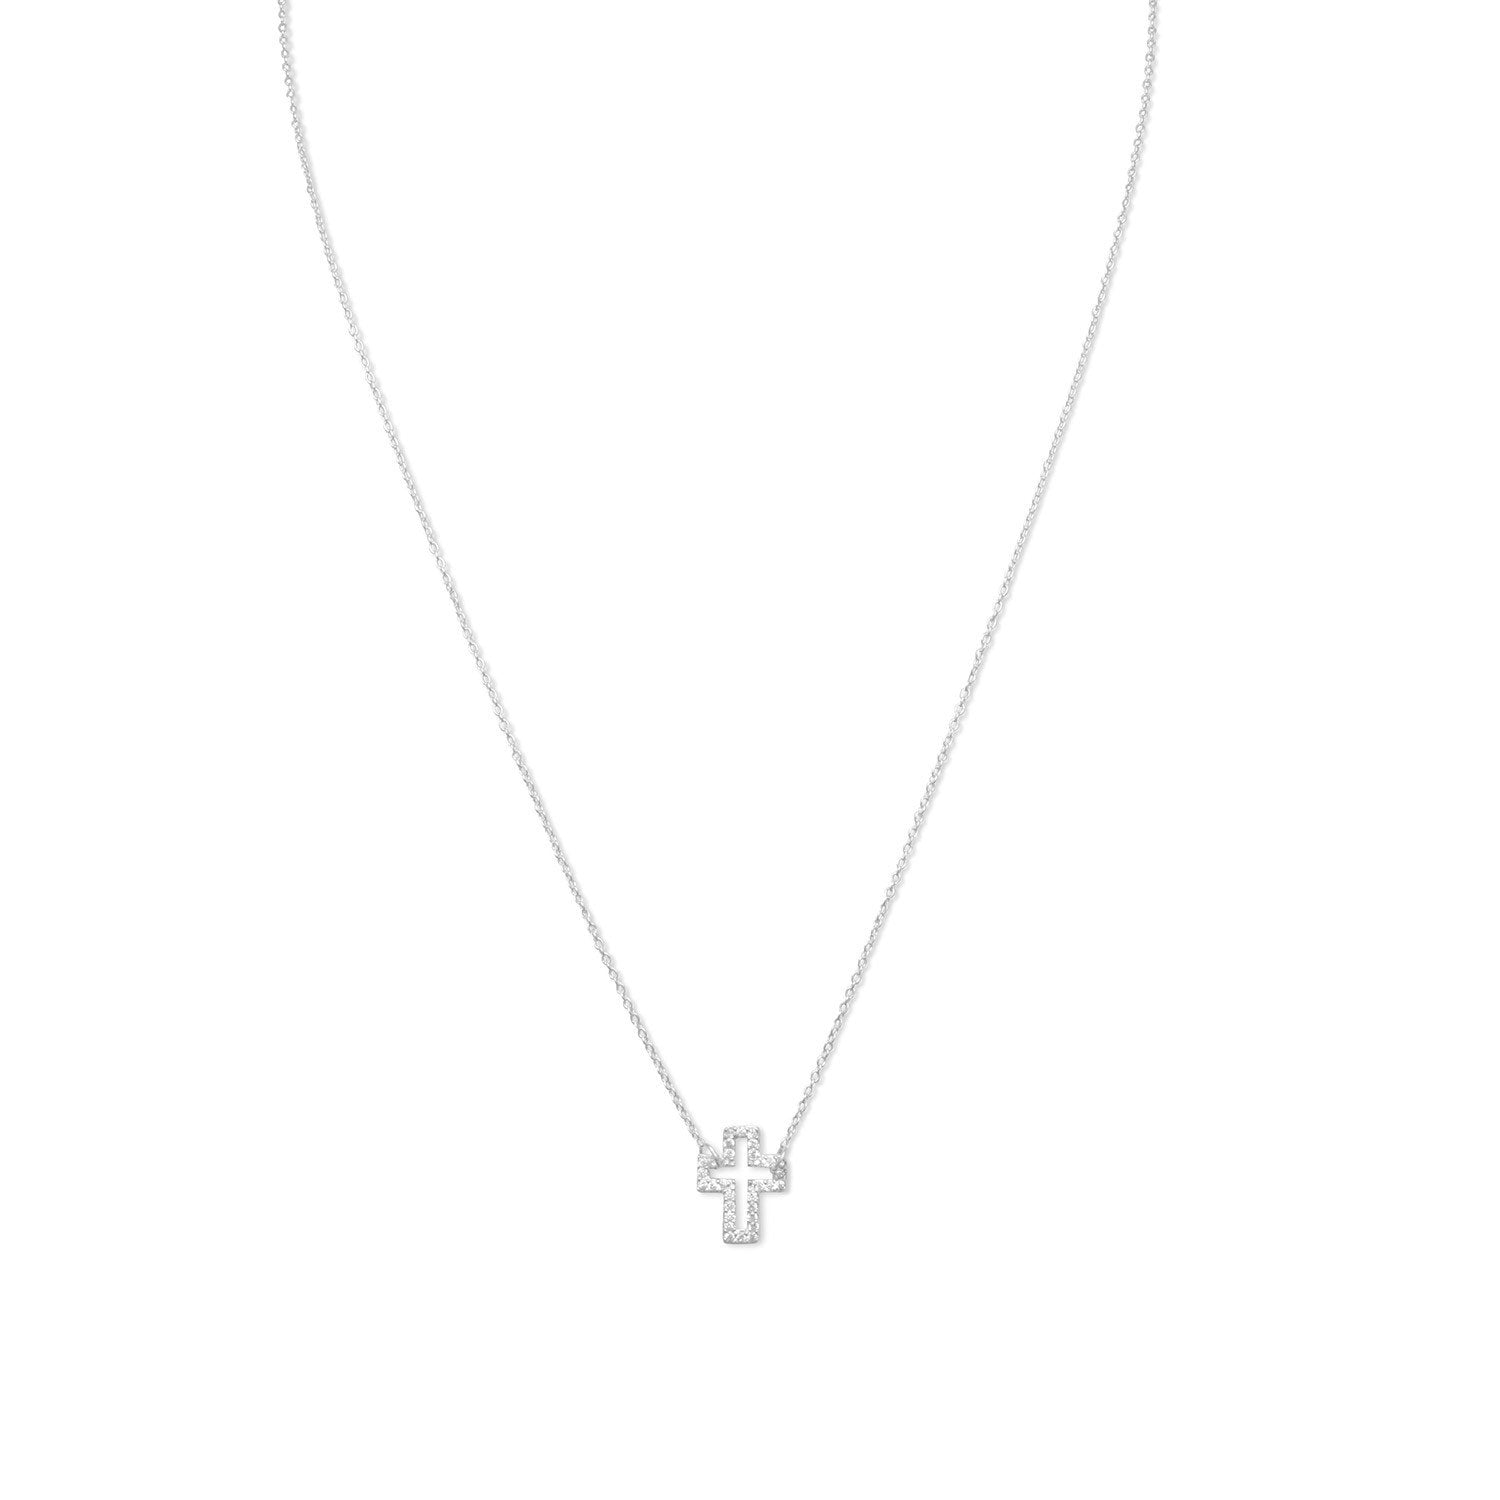 Delicate Sideways Cross Necklace with CZs - Joyeria Lady